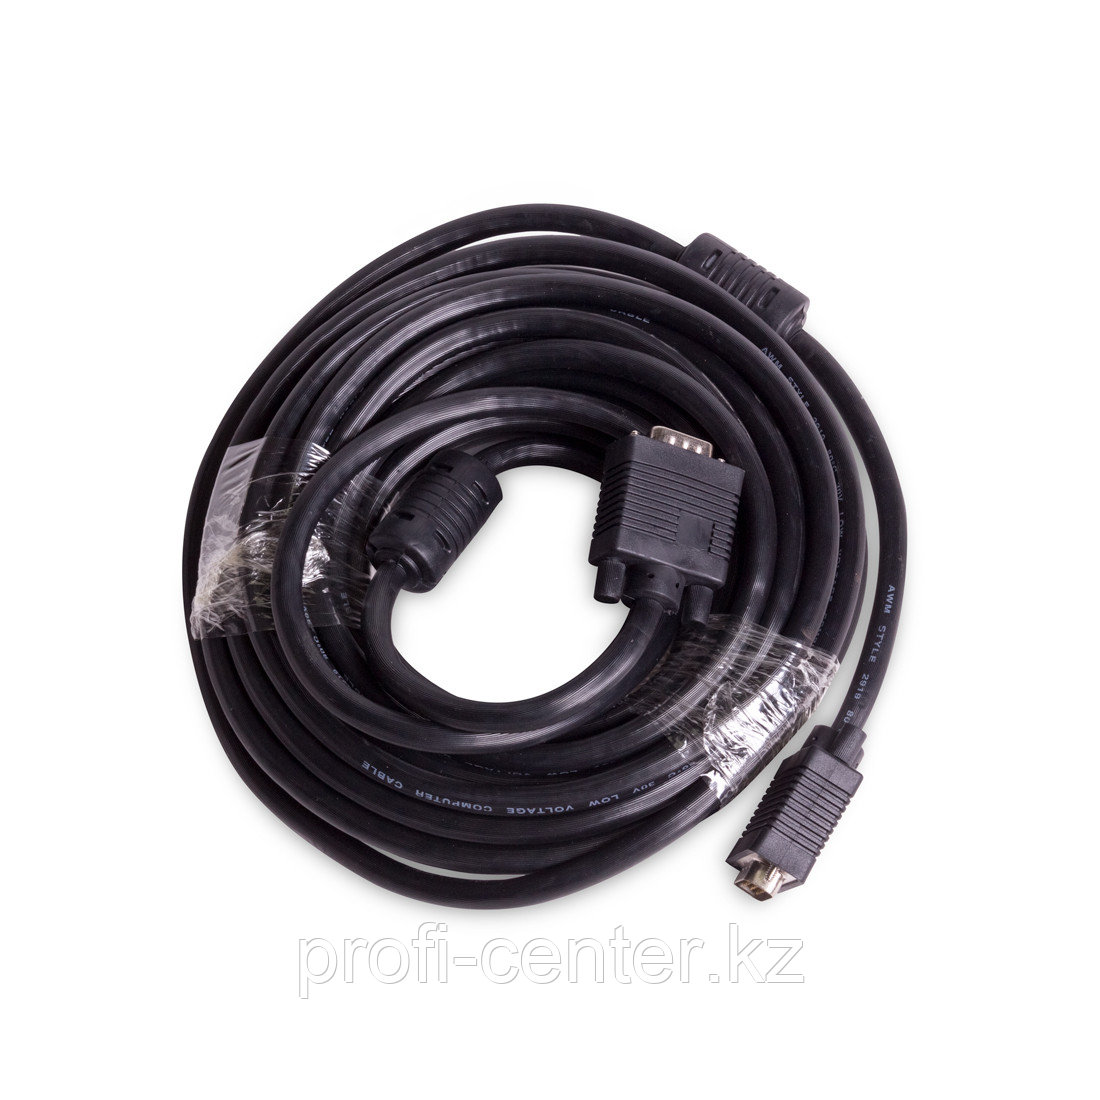 Интерфейсный кабель iPower VGA 15M/15M 10 метров